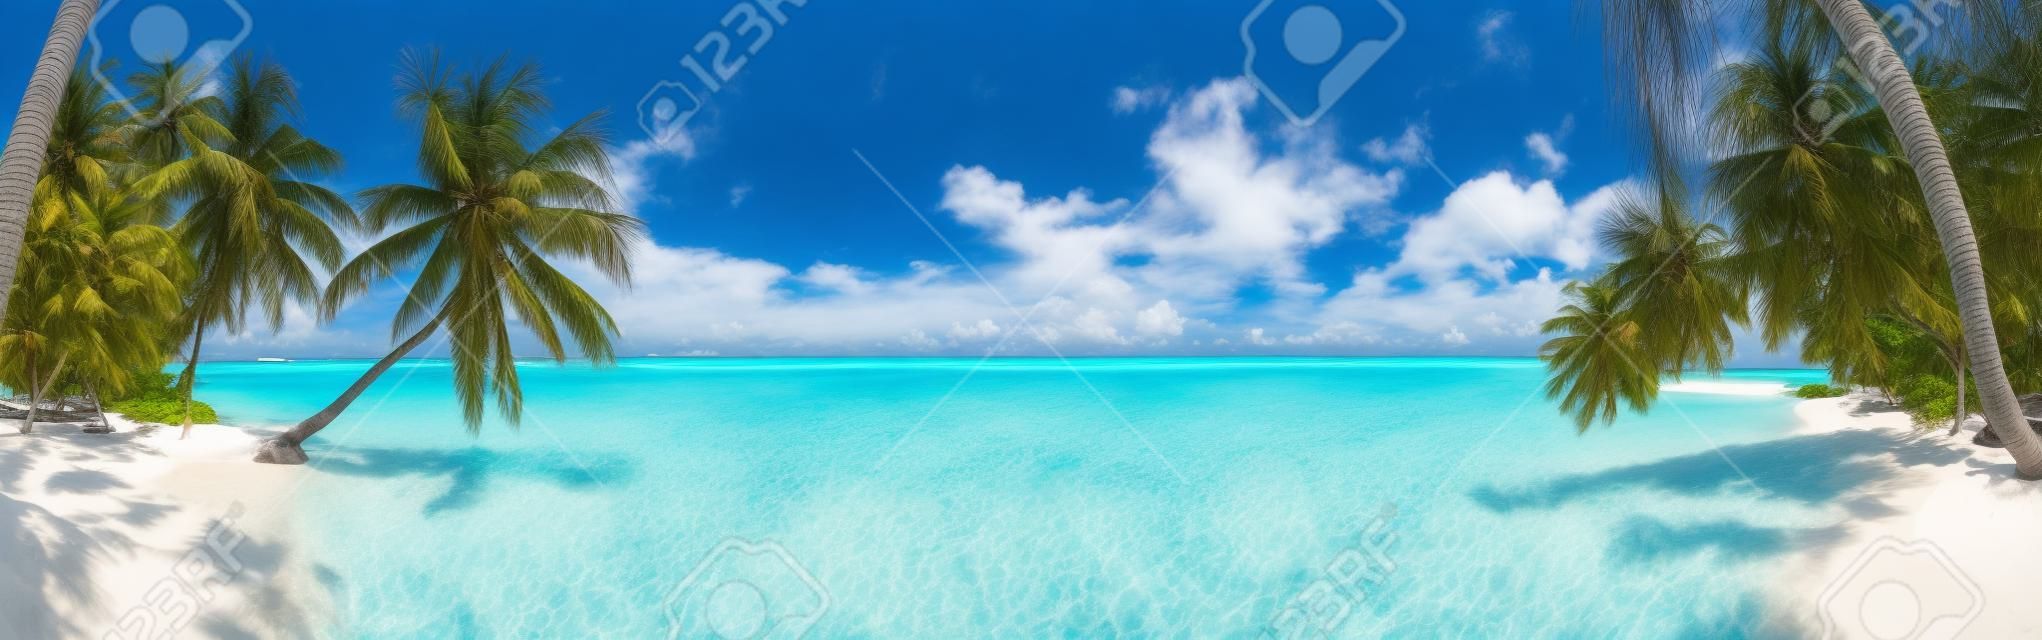 panorama Beach à Maldives avec le ciel bleu, des palmiers et de l'eau turquoise